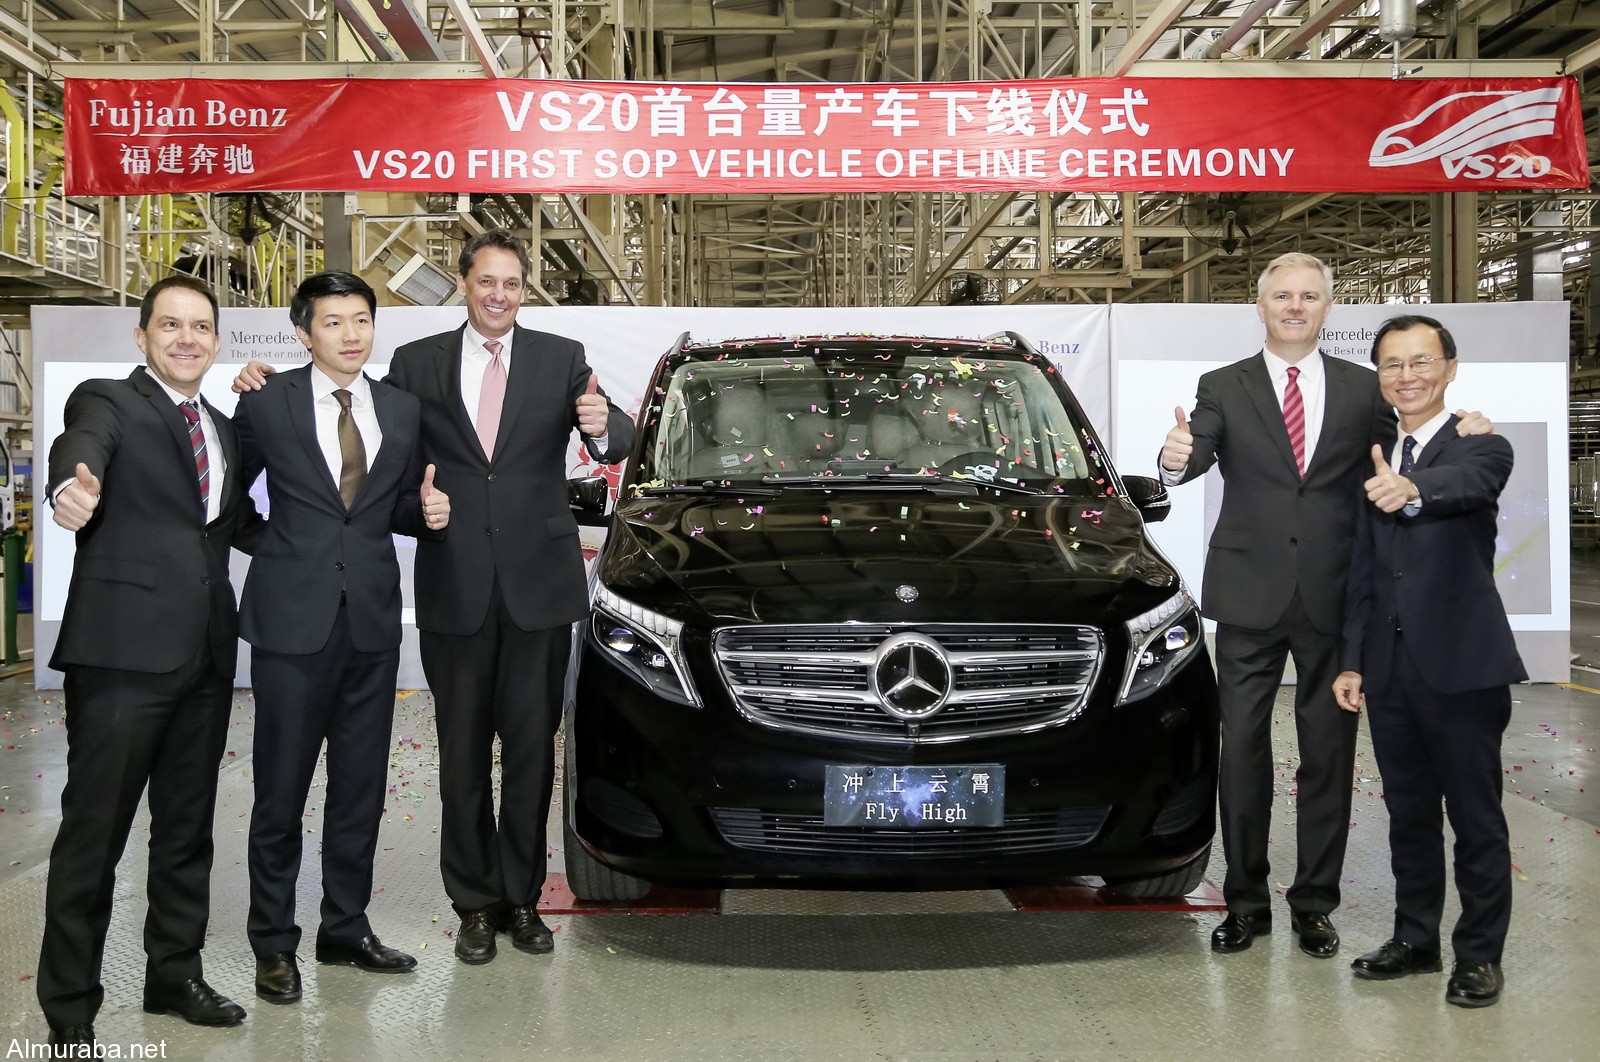 “مرسيدس بنز” تكشف النقاب عن مركبة V-Class الجديدة المصنعة بالصين Mercedes-Benz 2017